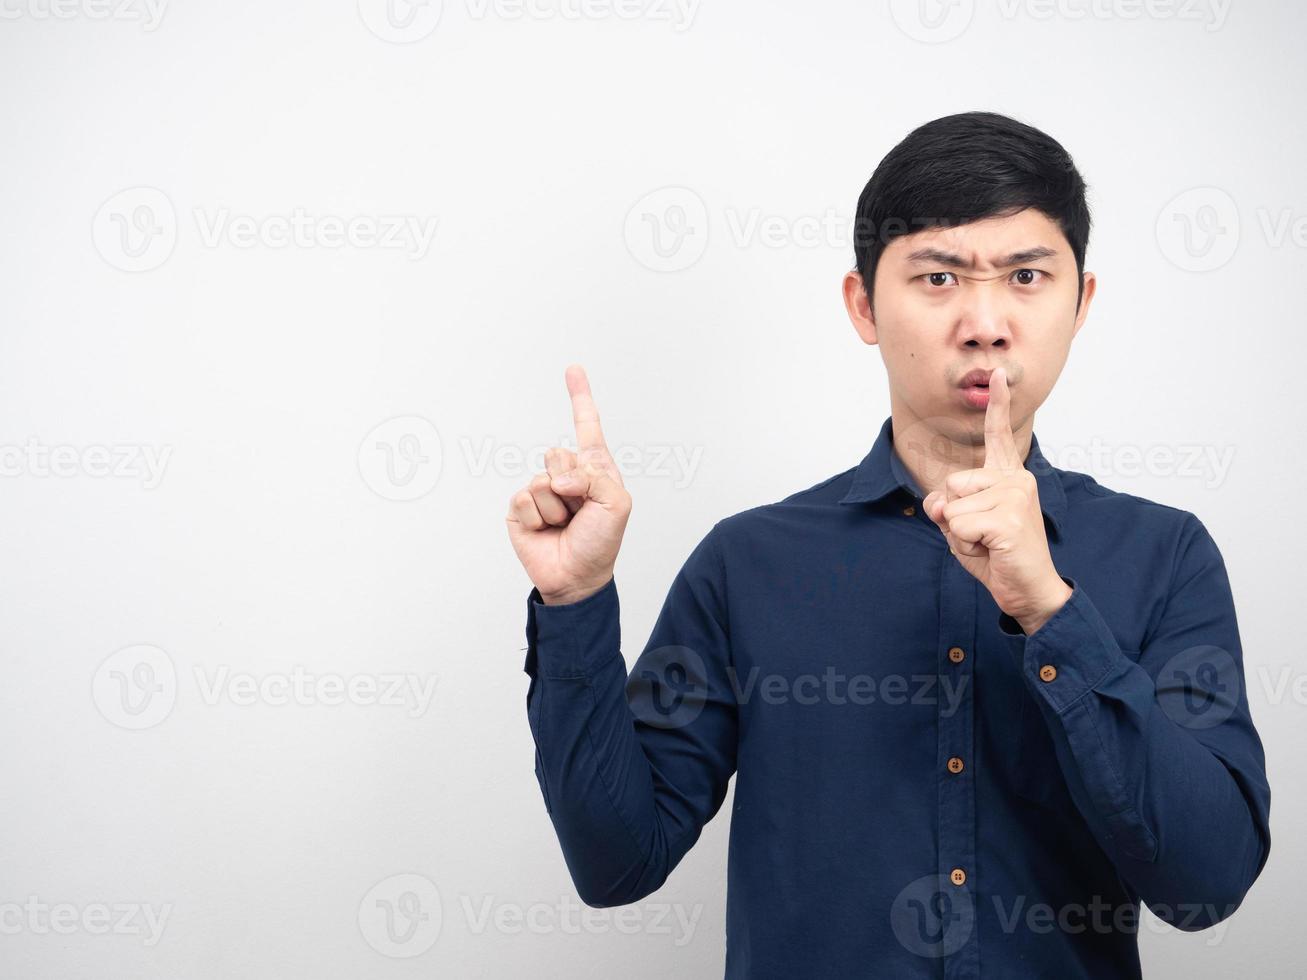 homem rosto sério gesto shh aponte o dedo para o espaço da cópia fundo branco foto